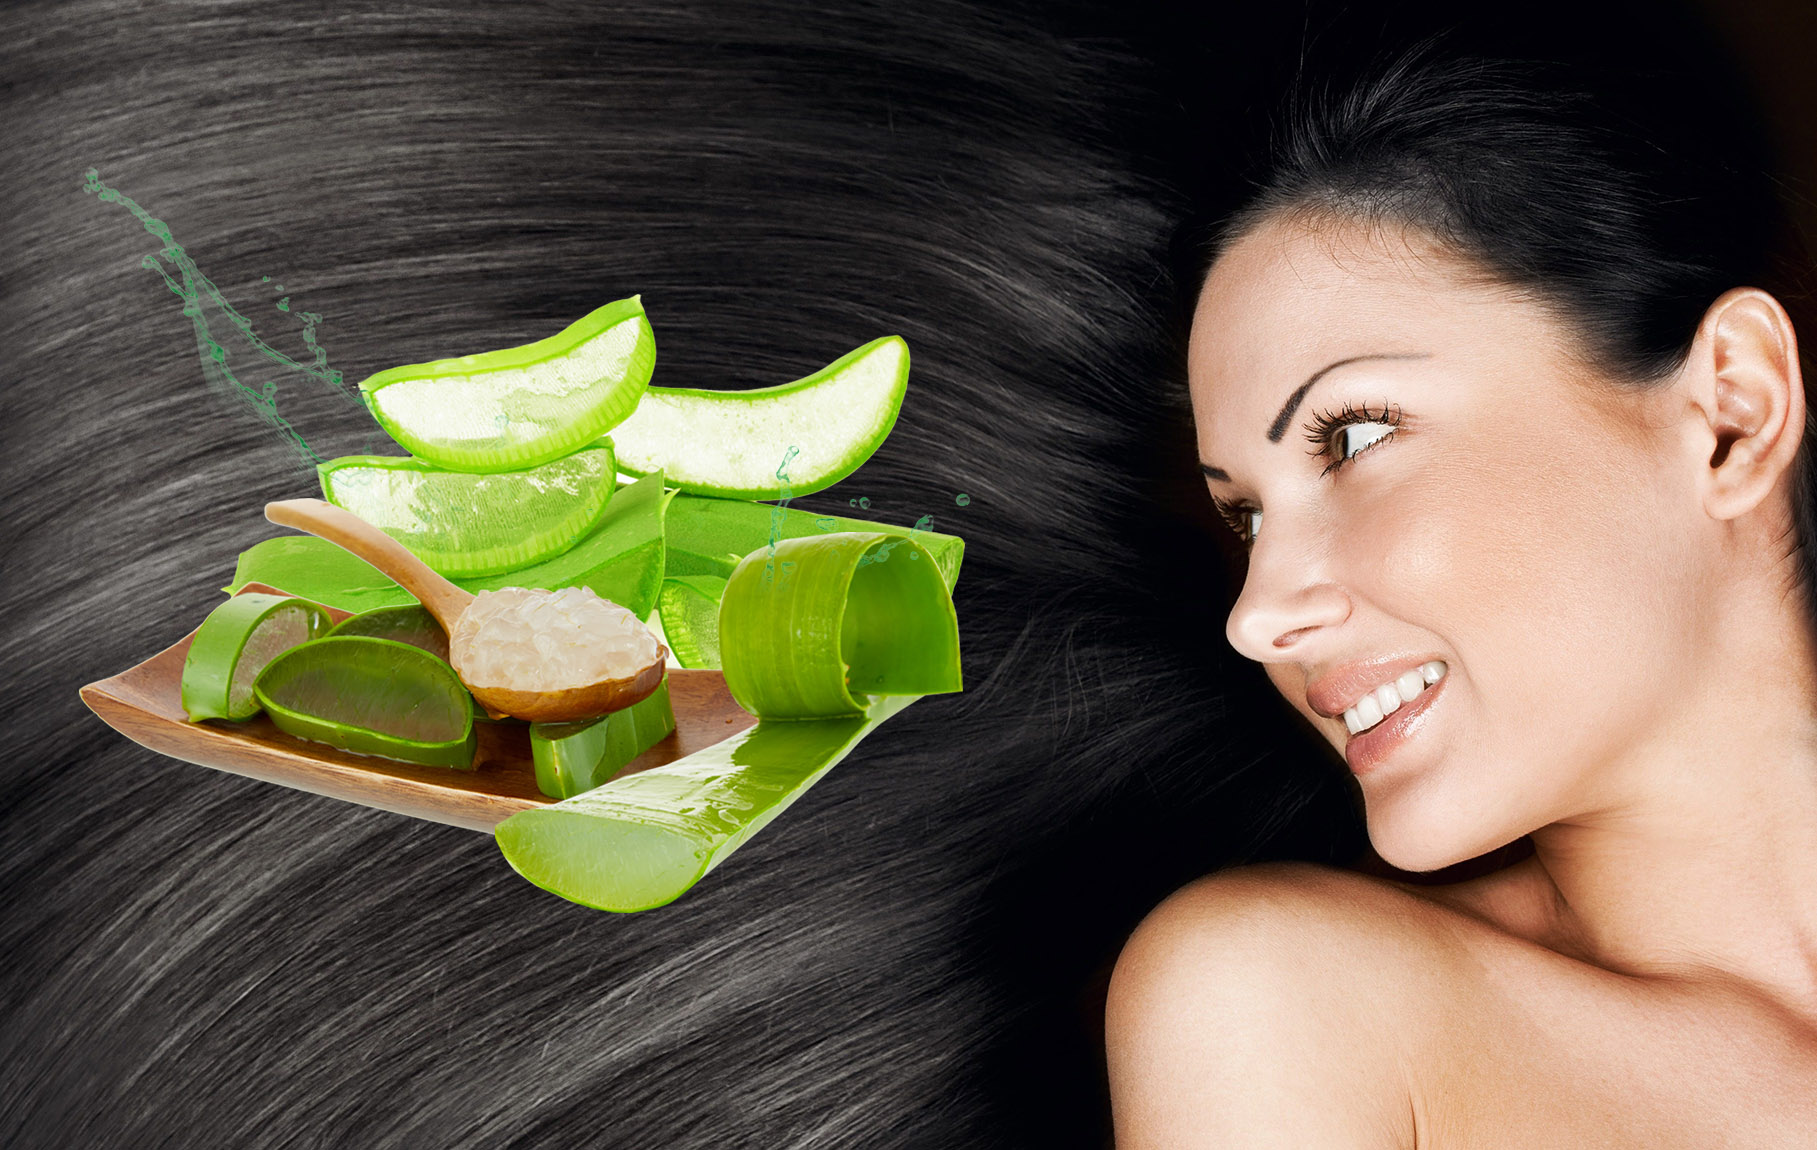 Алоэ для волос - полезные свойства и показания, способы и правила применения масла, экстракта или сока